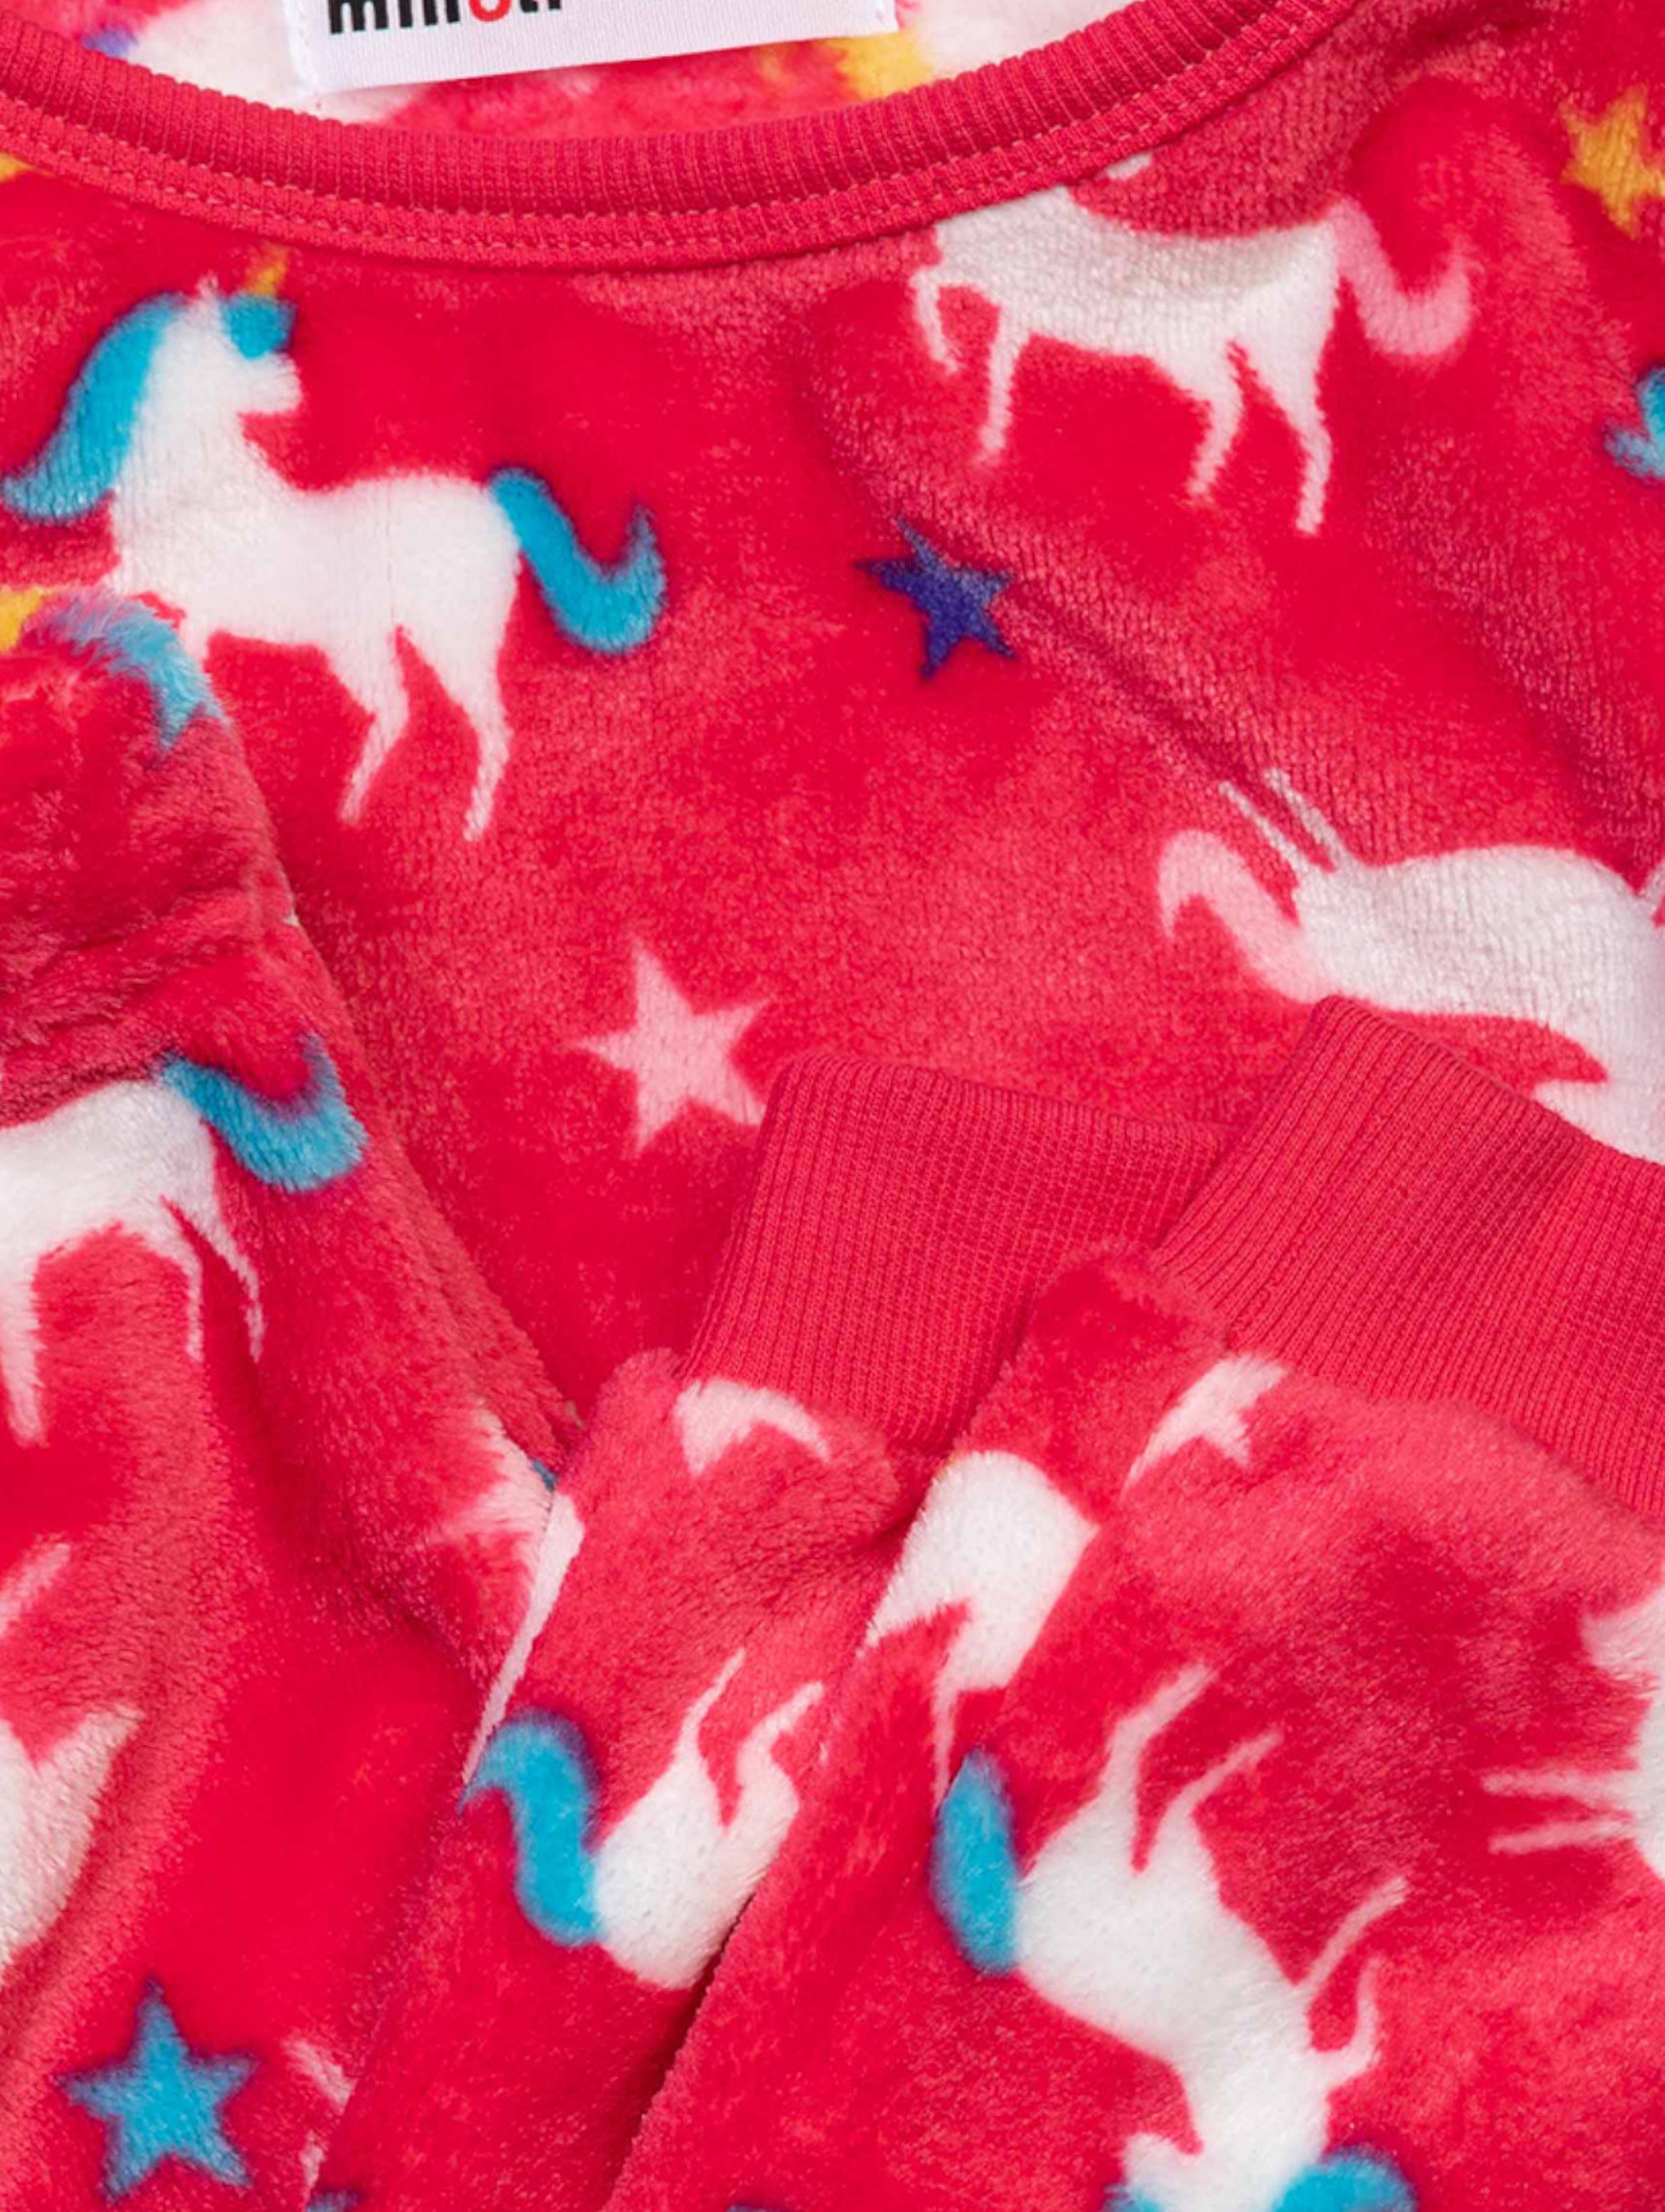 Piżama niemowlęca z długim rękawem czerwona w jednorożce